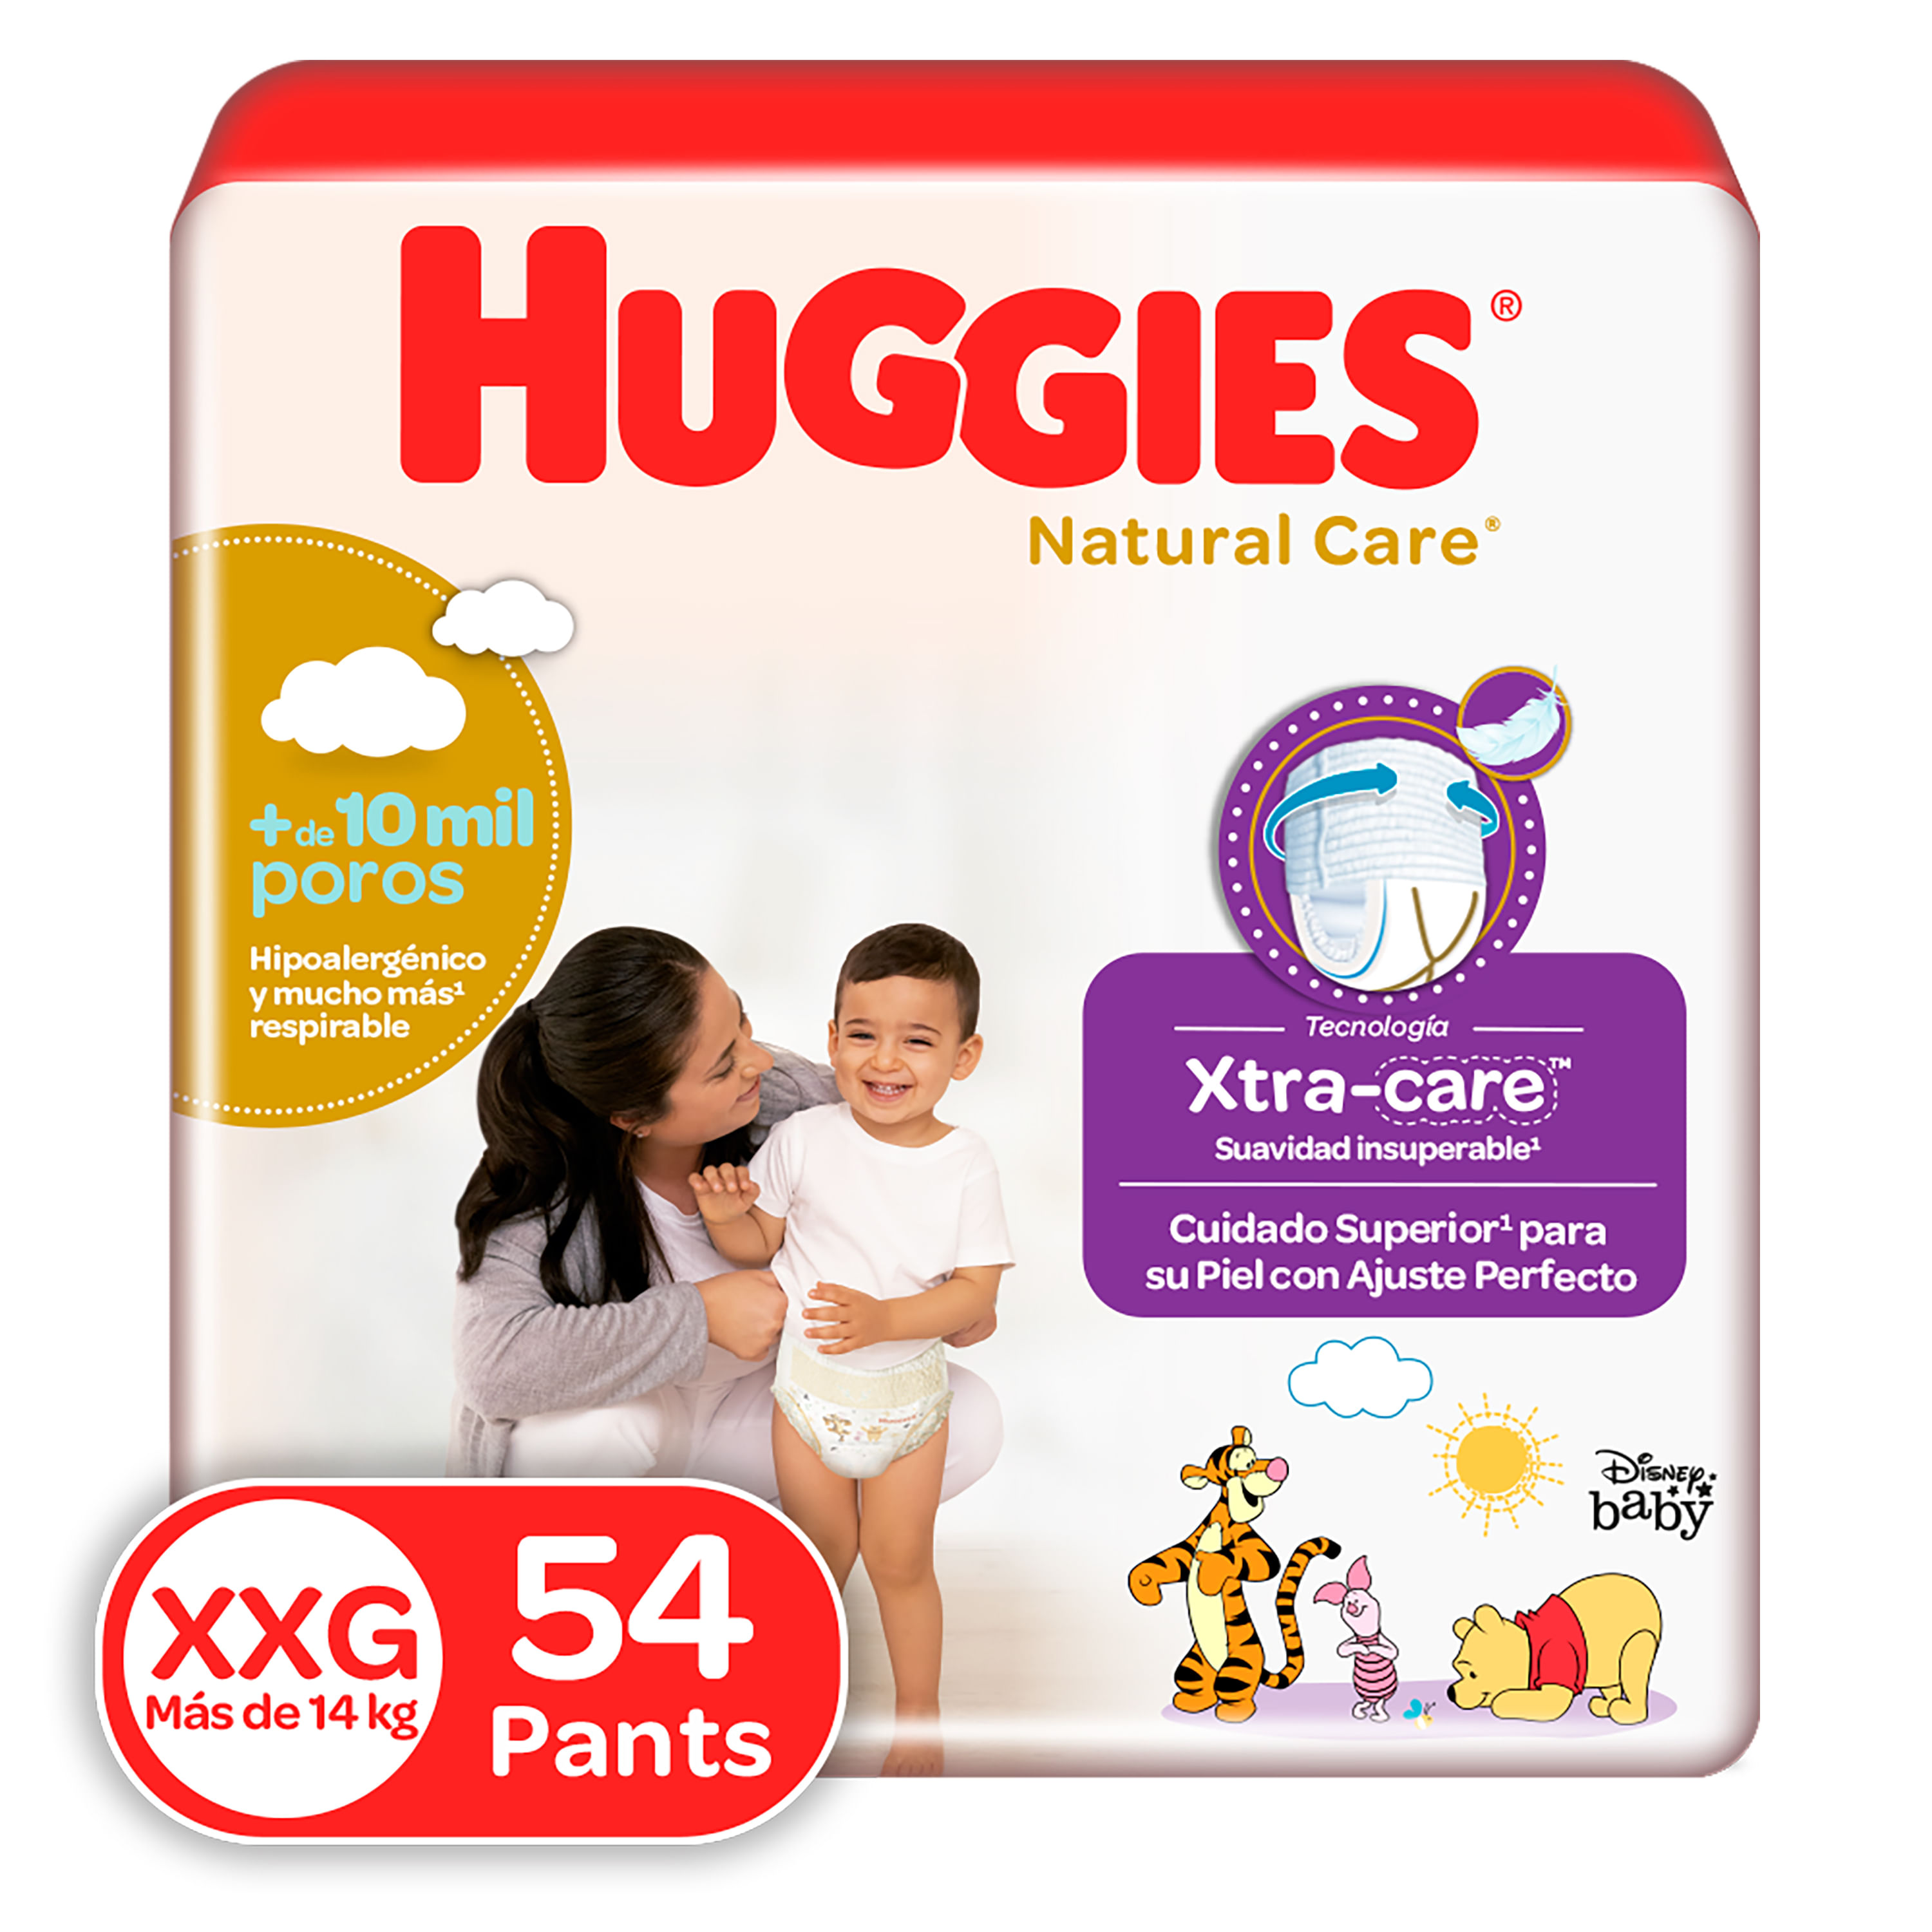 Comprar Pañal Parents Choice Baby Diaper Size 5 Jumbo - 27 Unidades, Walmart Guatemala - Maxi Despensa